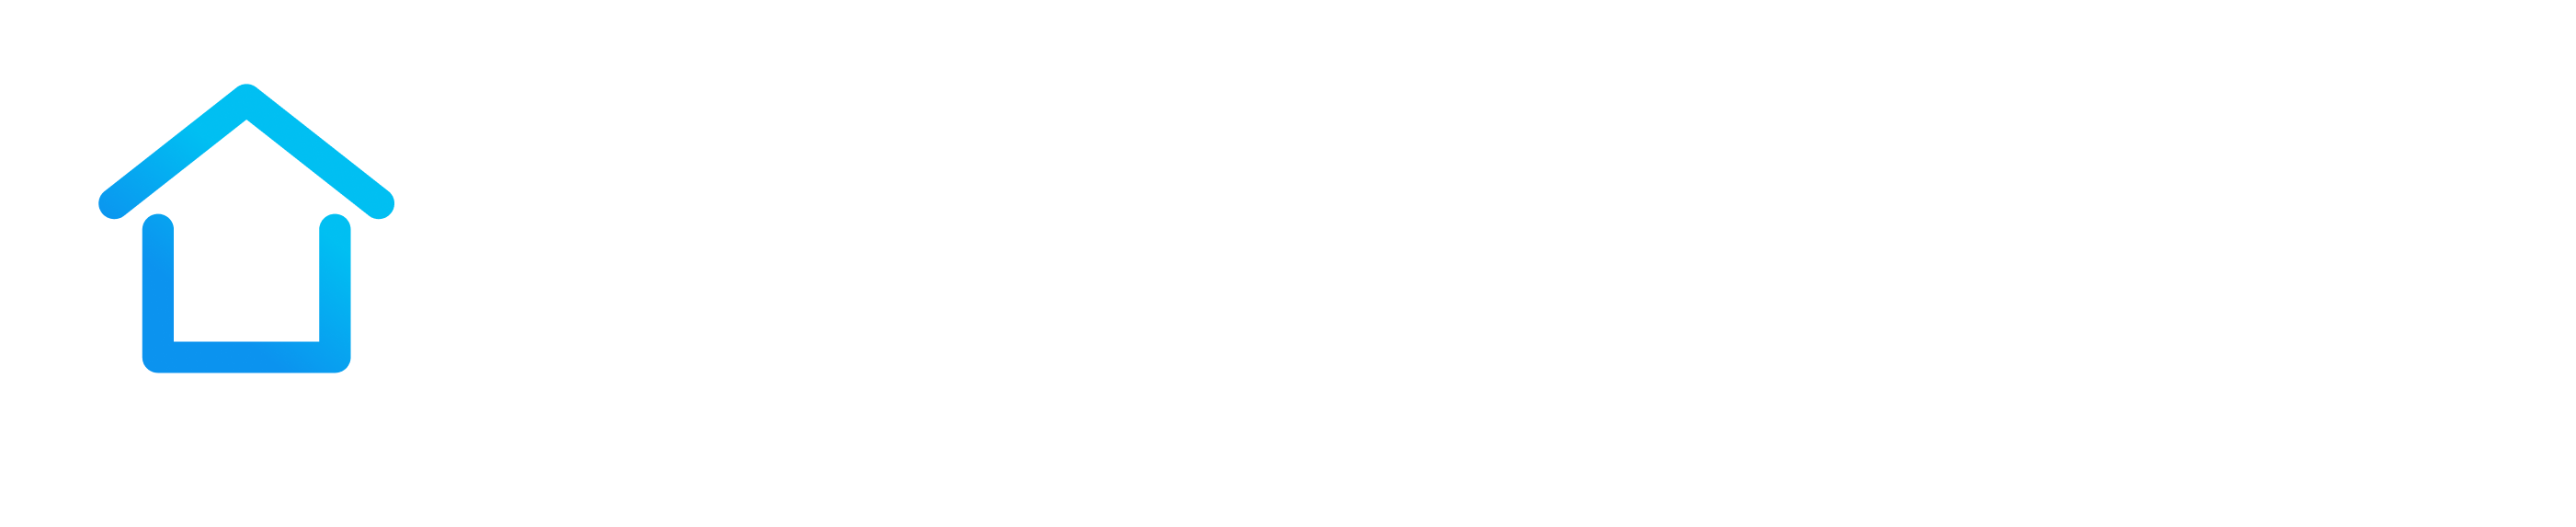 RoomMate_Logo_White